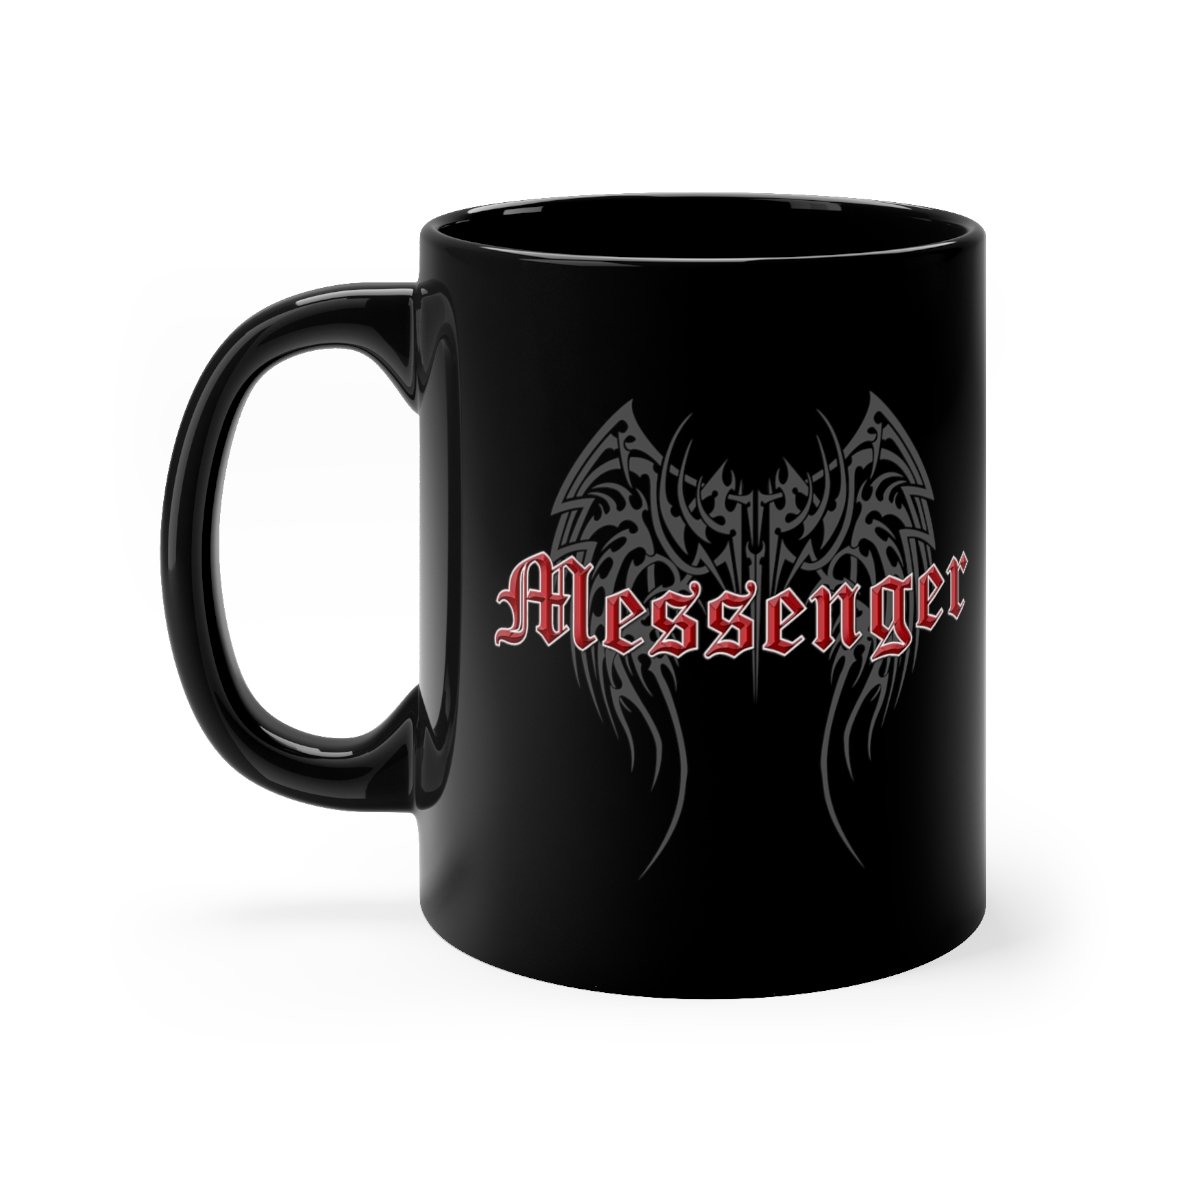 Messenger Logo Black mug 11oz